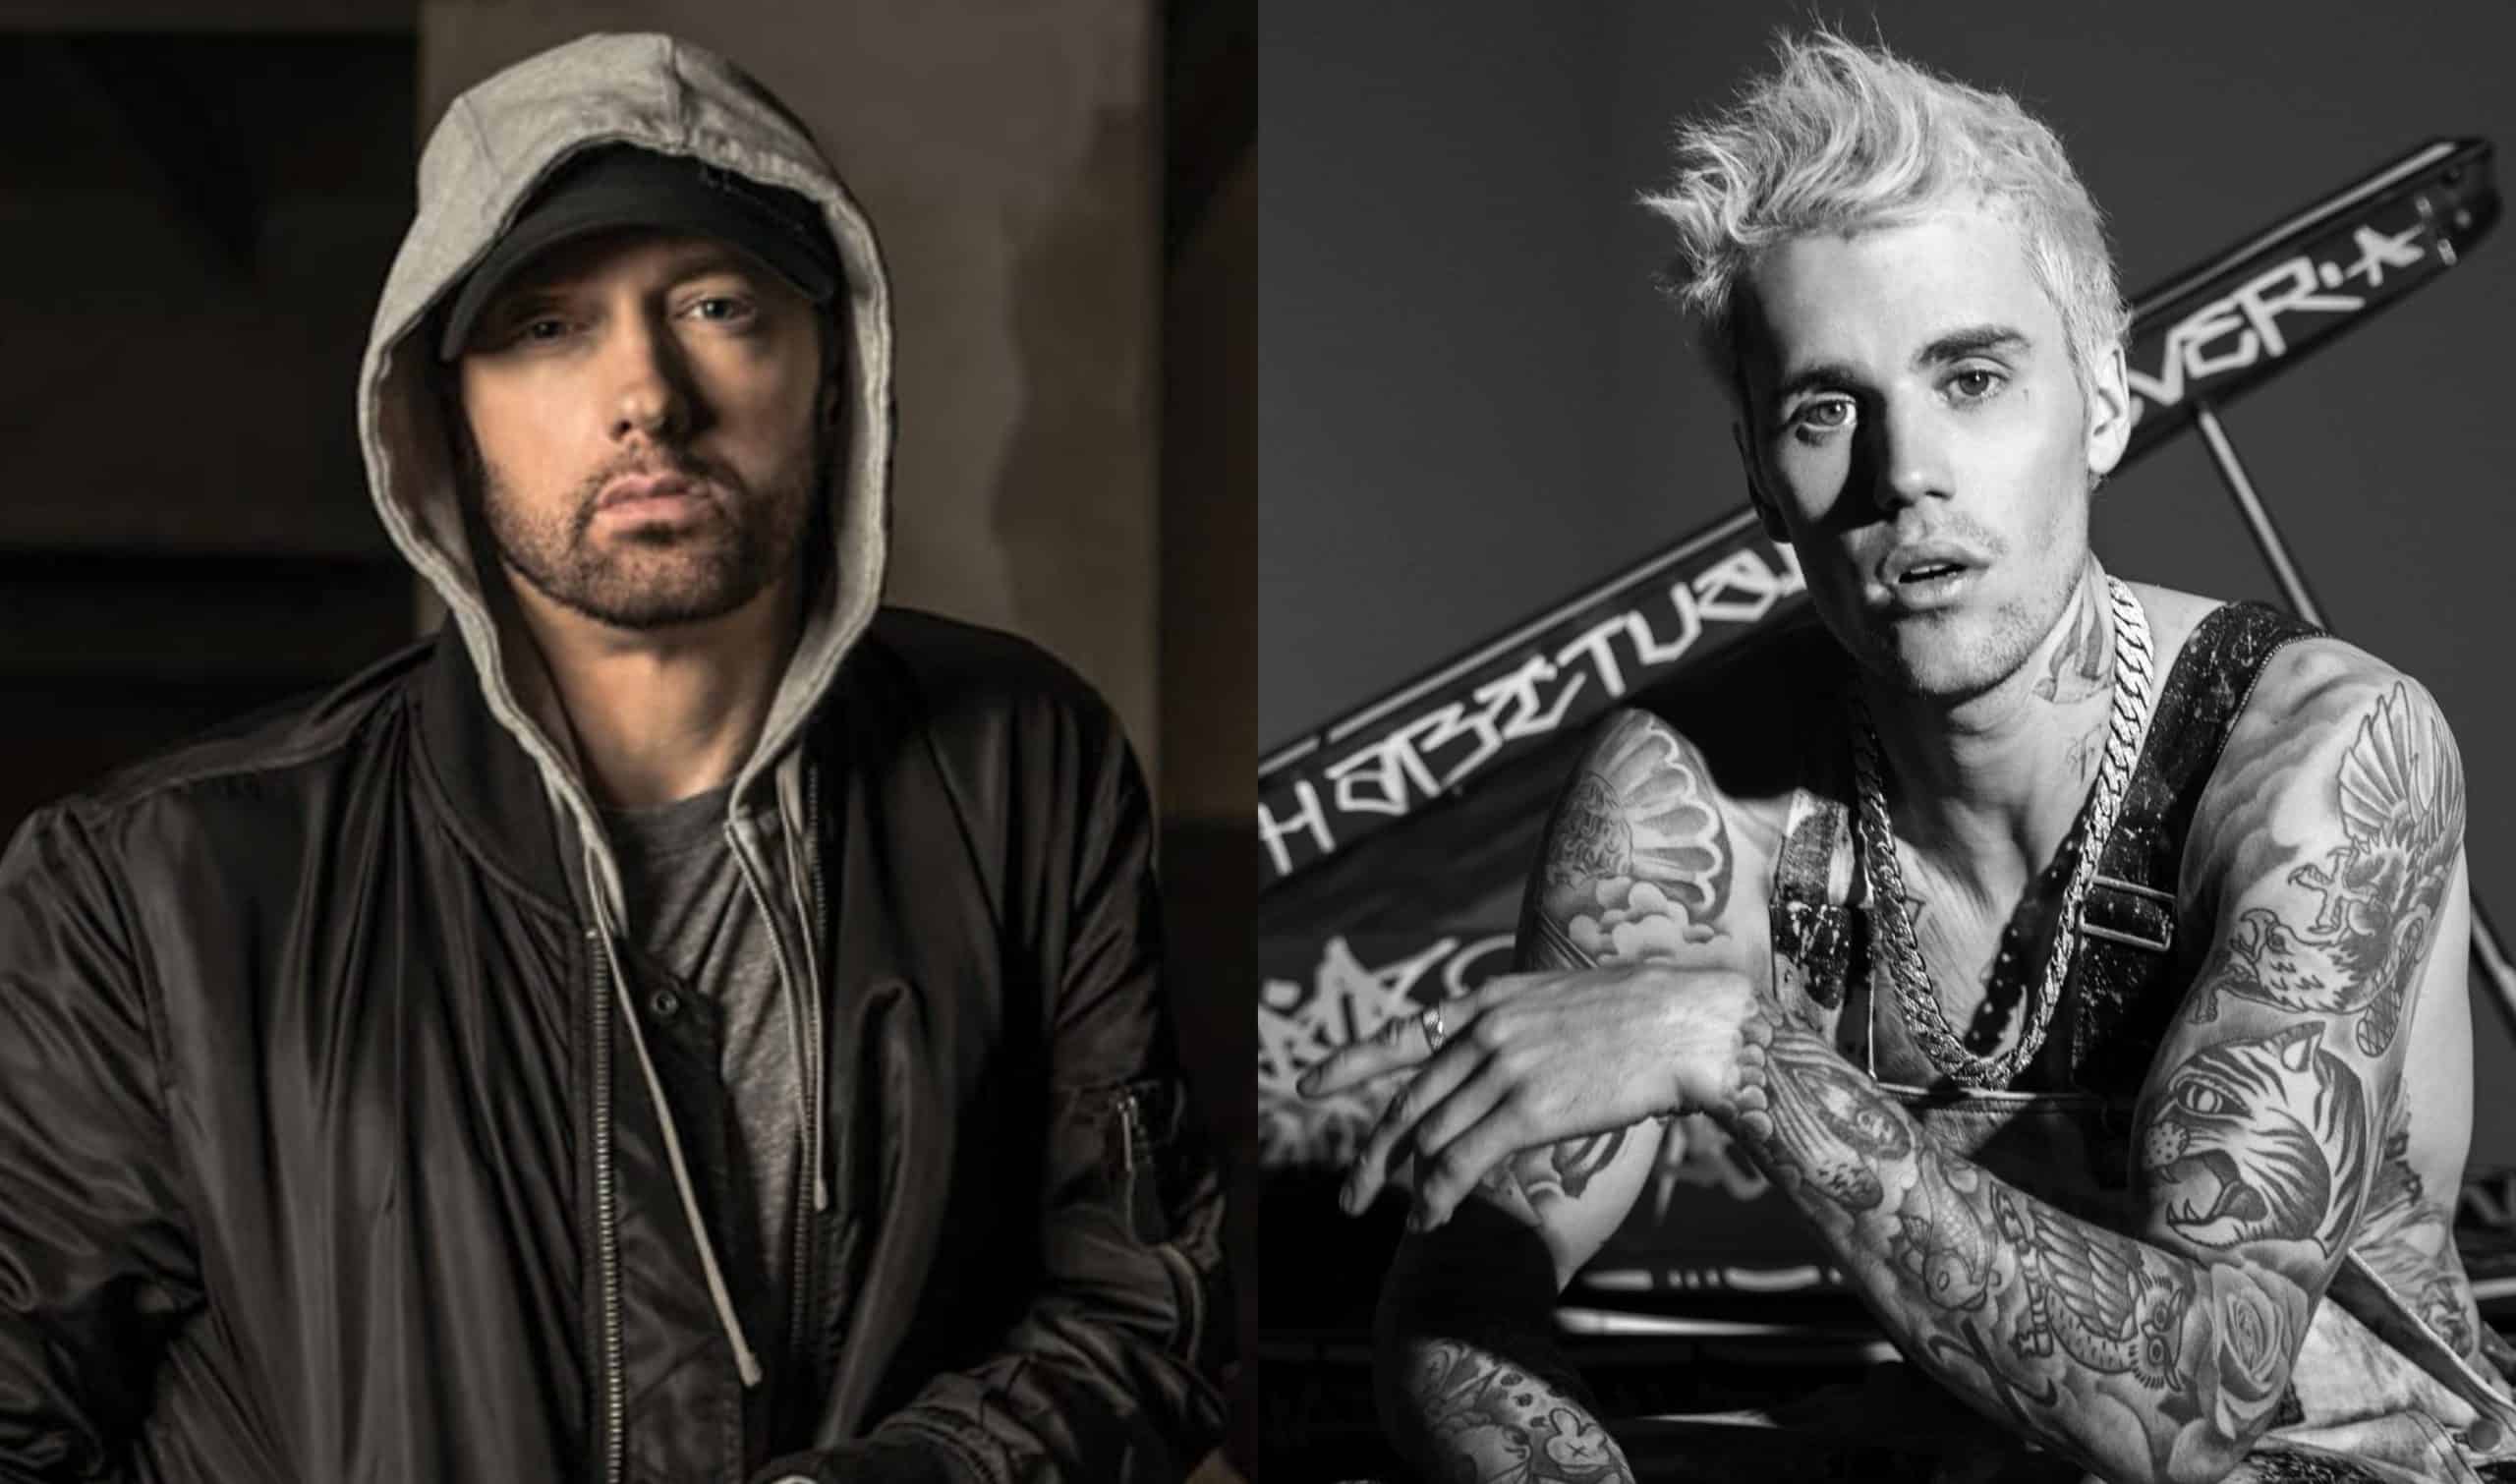 VOTE NOW It's Eminem's Stans Vs Justin Bieber's Beliebers in Billboard Fan Army Face-Off